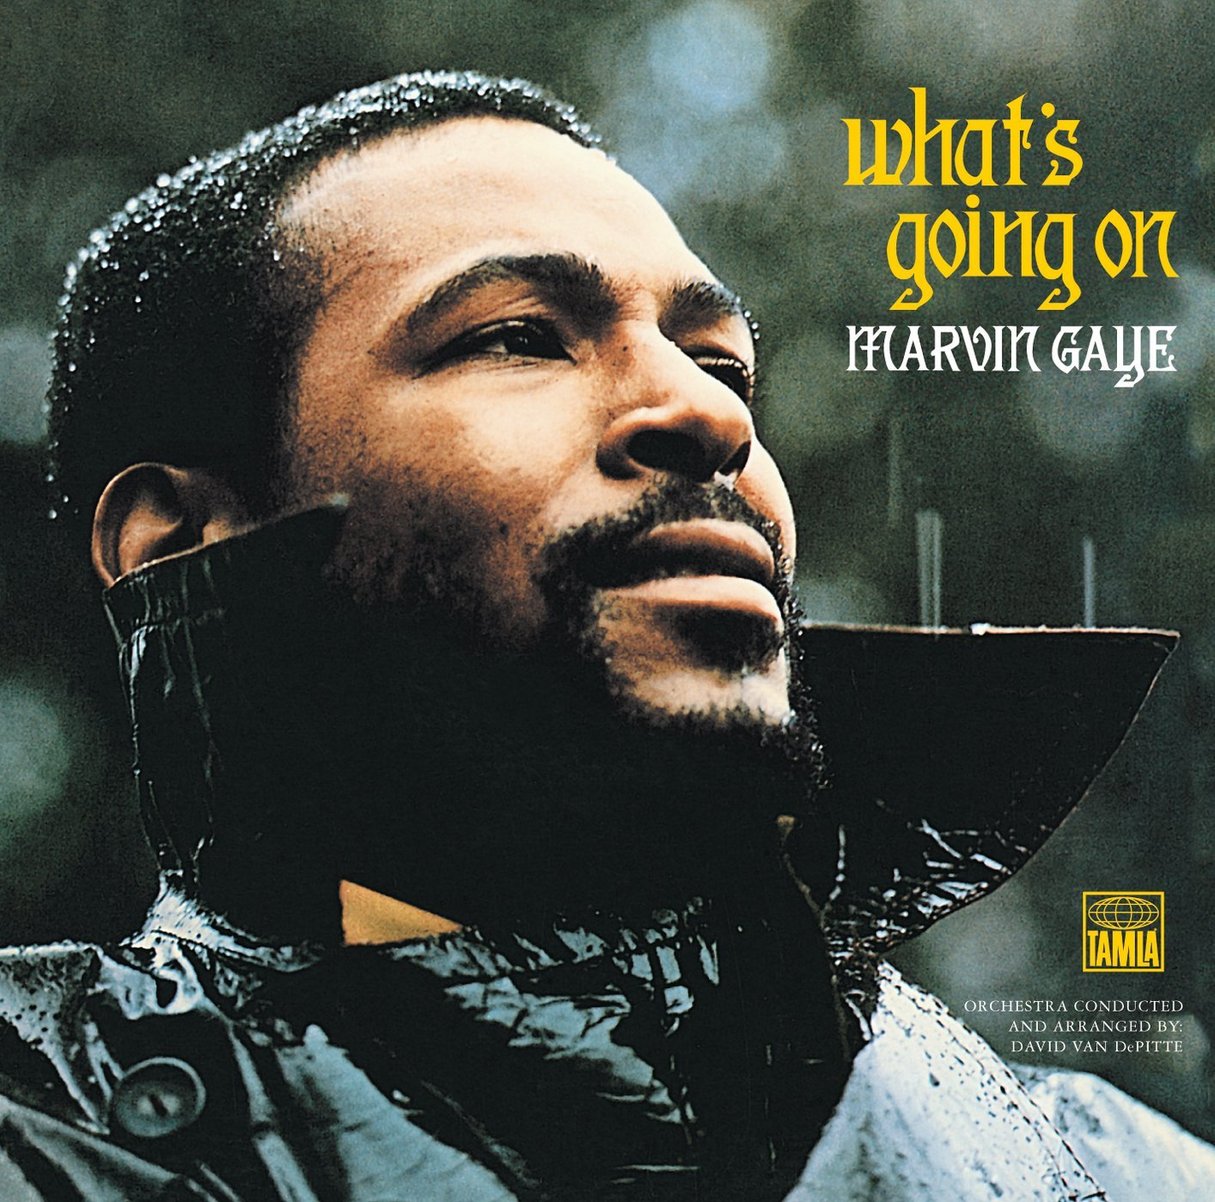 Visuel de l’album « What’s going on » de Marvin Gaye. © Motown Records/Tamla